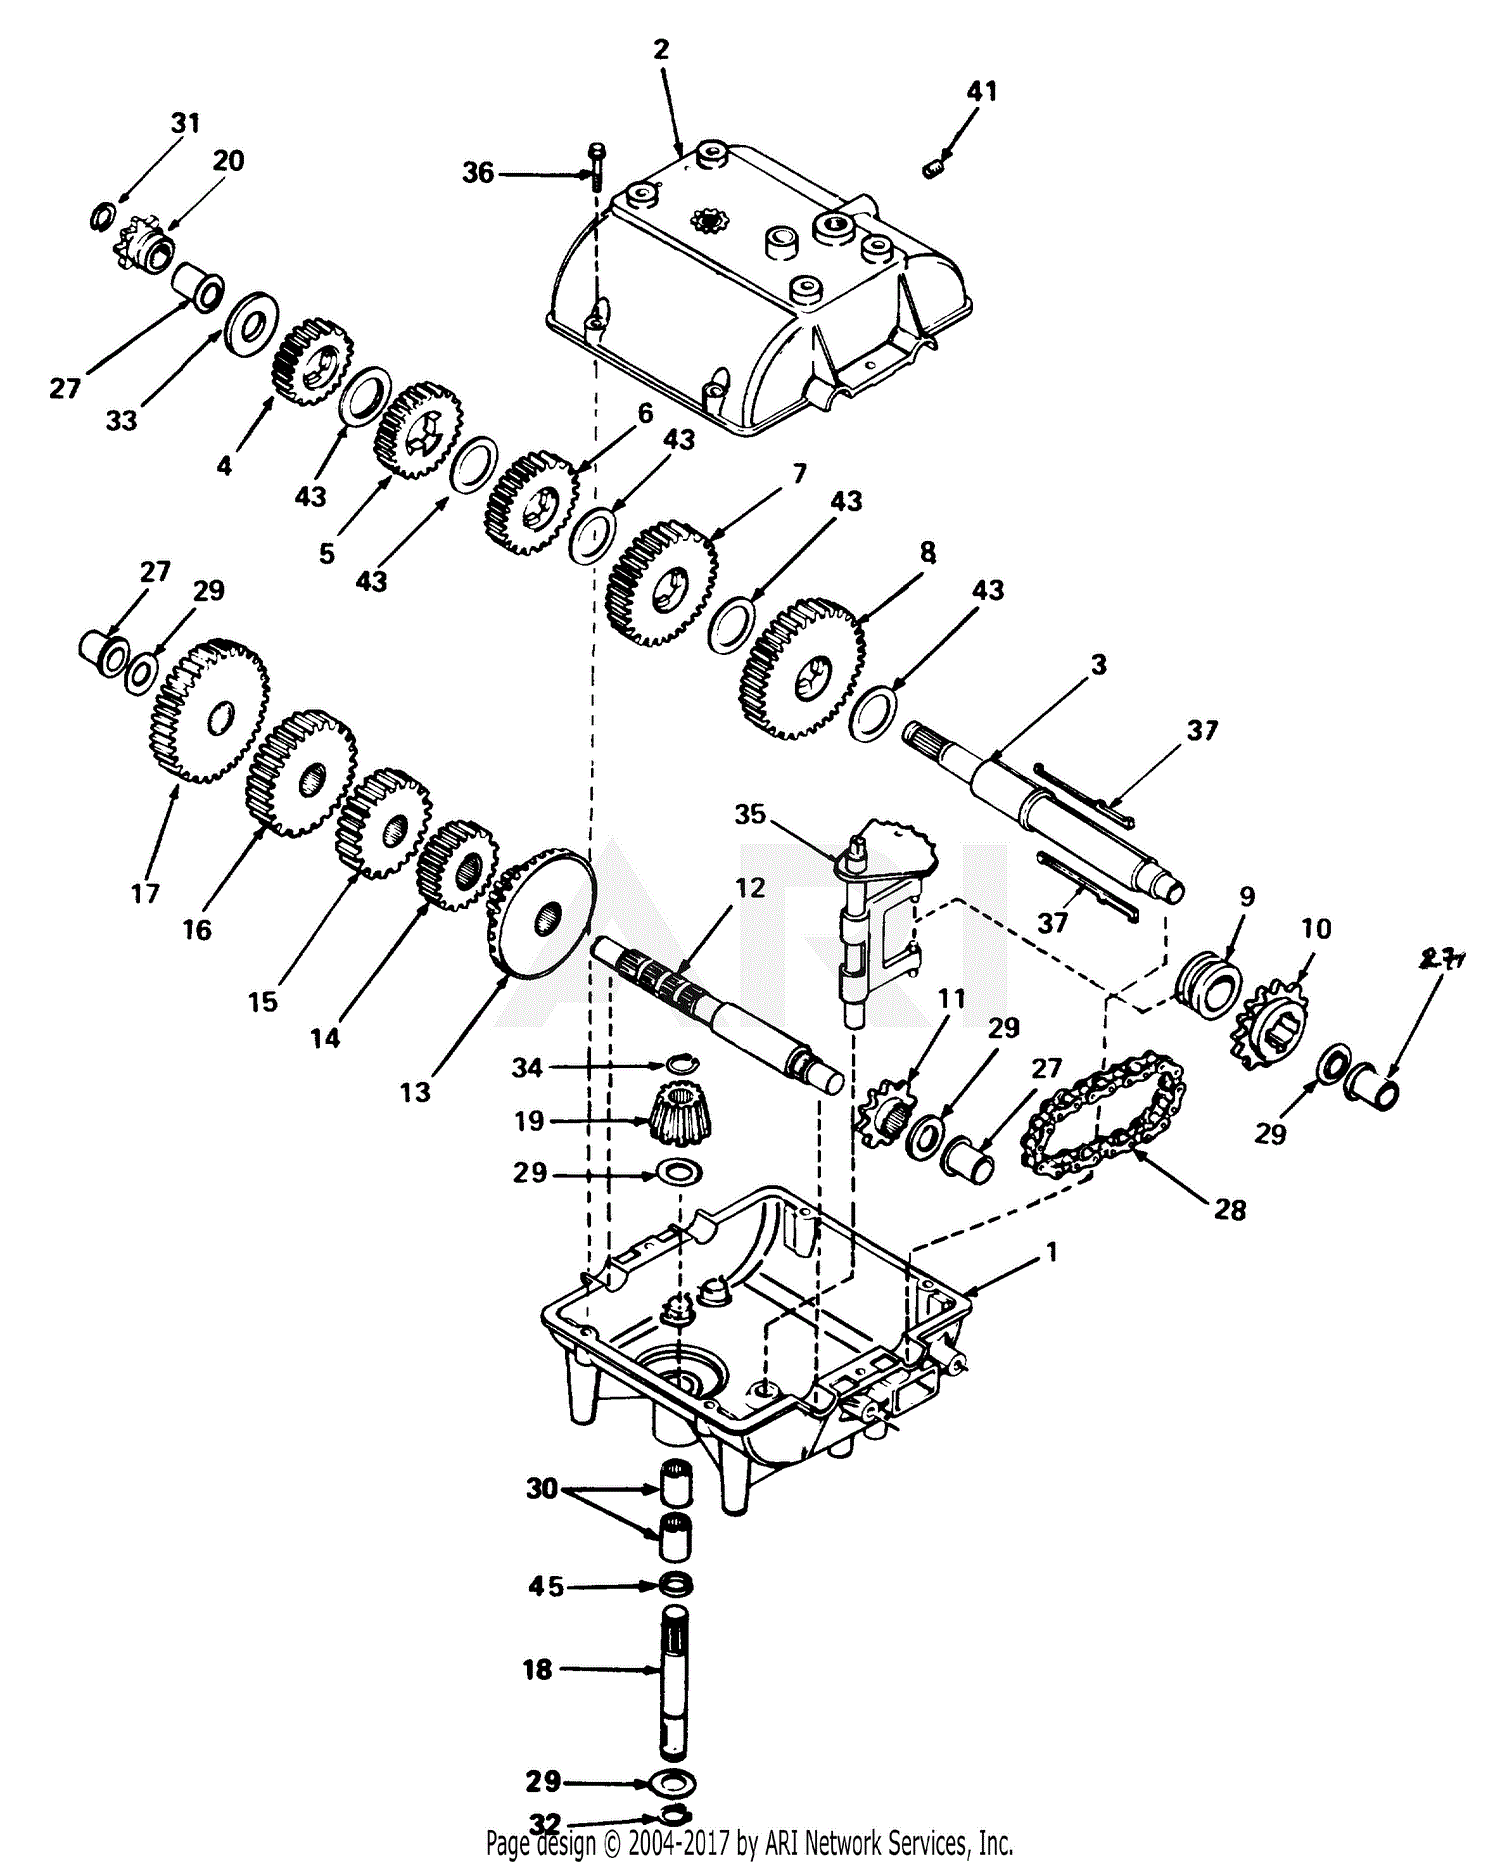 [DIAGRAM] Bobcat 773 Hydraulic Hose Diagram - MYDIAGRAM.ONLINE